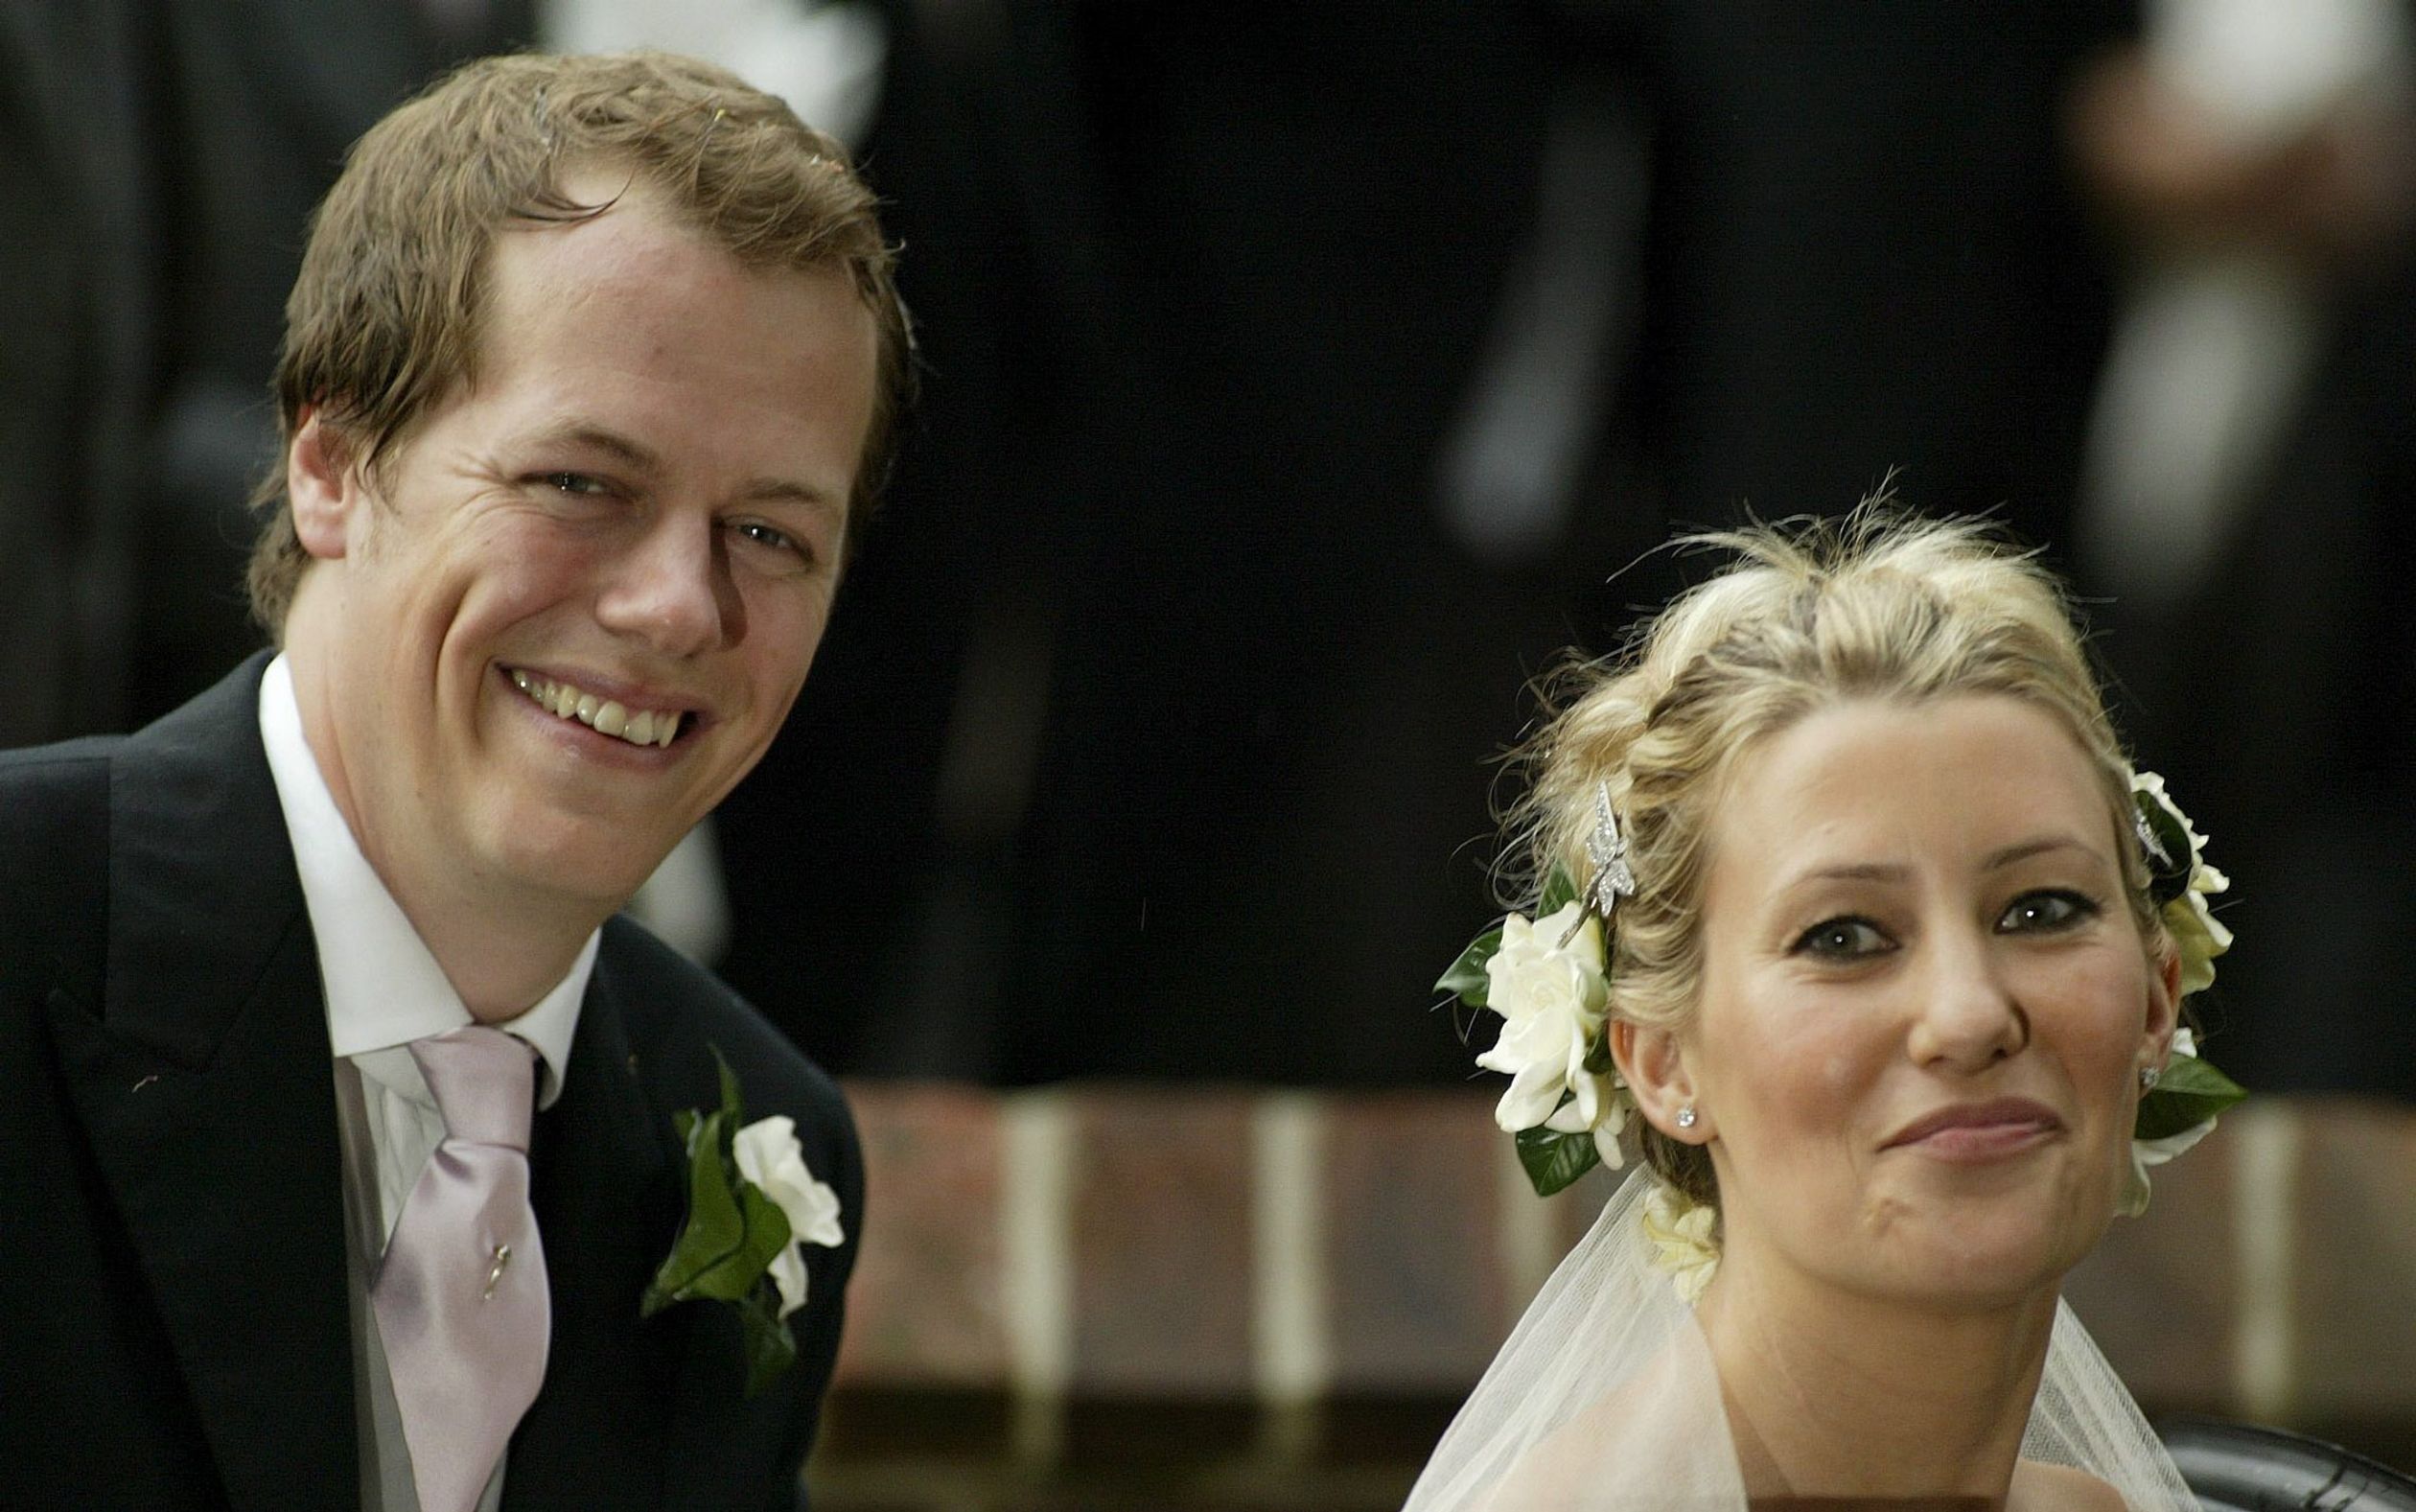 Camilla's zoon, Tom, trouwde in 2005 met Sarah. Samen hebben ze twee kinderen.